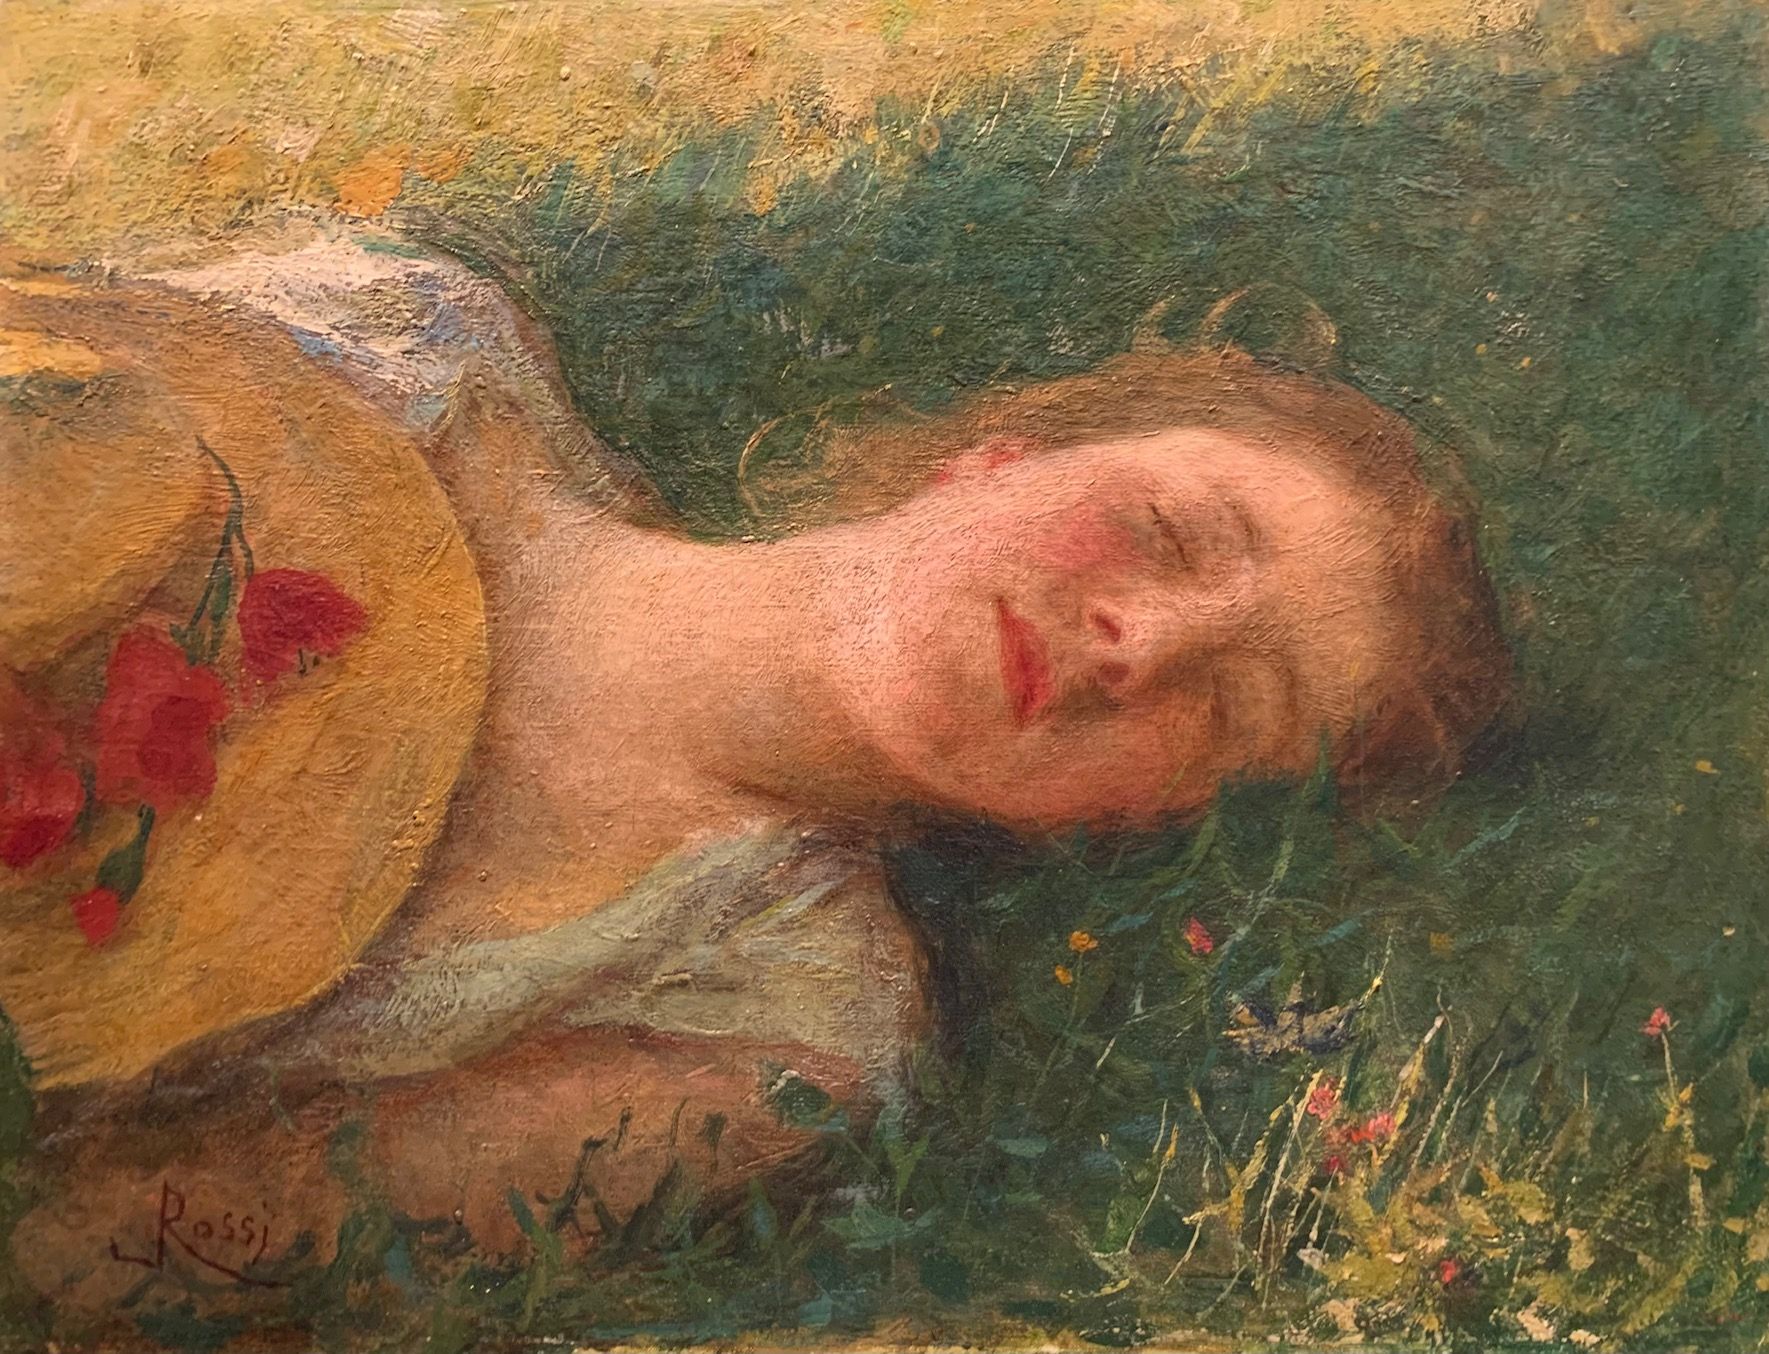 Luigi Rossi, Il sonno, 1908 - 1910, olio su tela